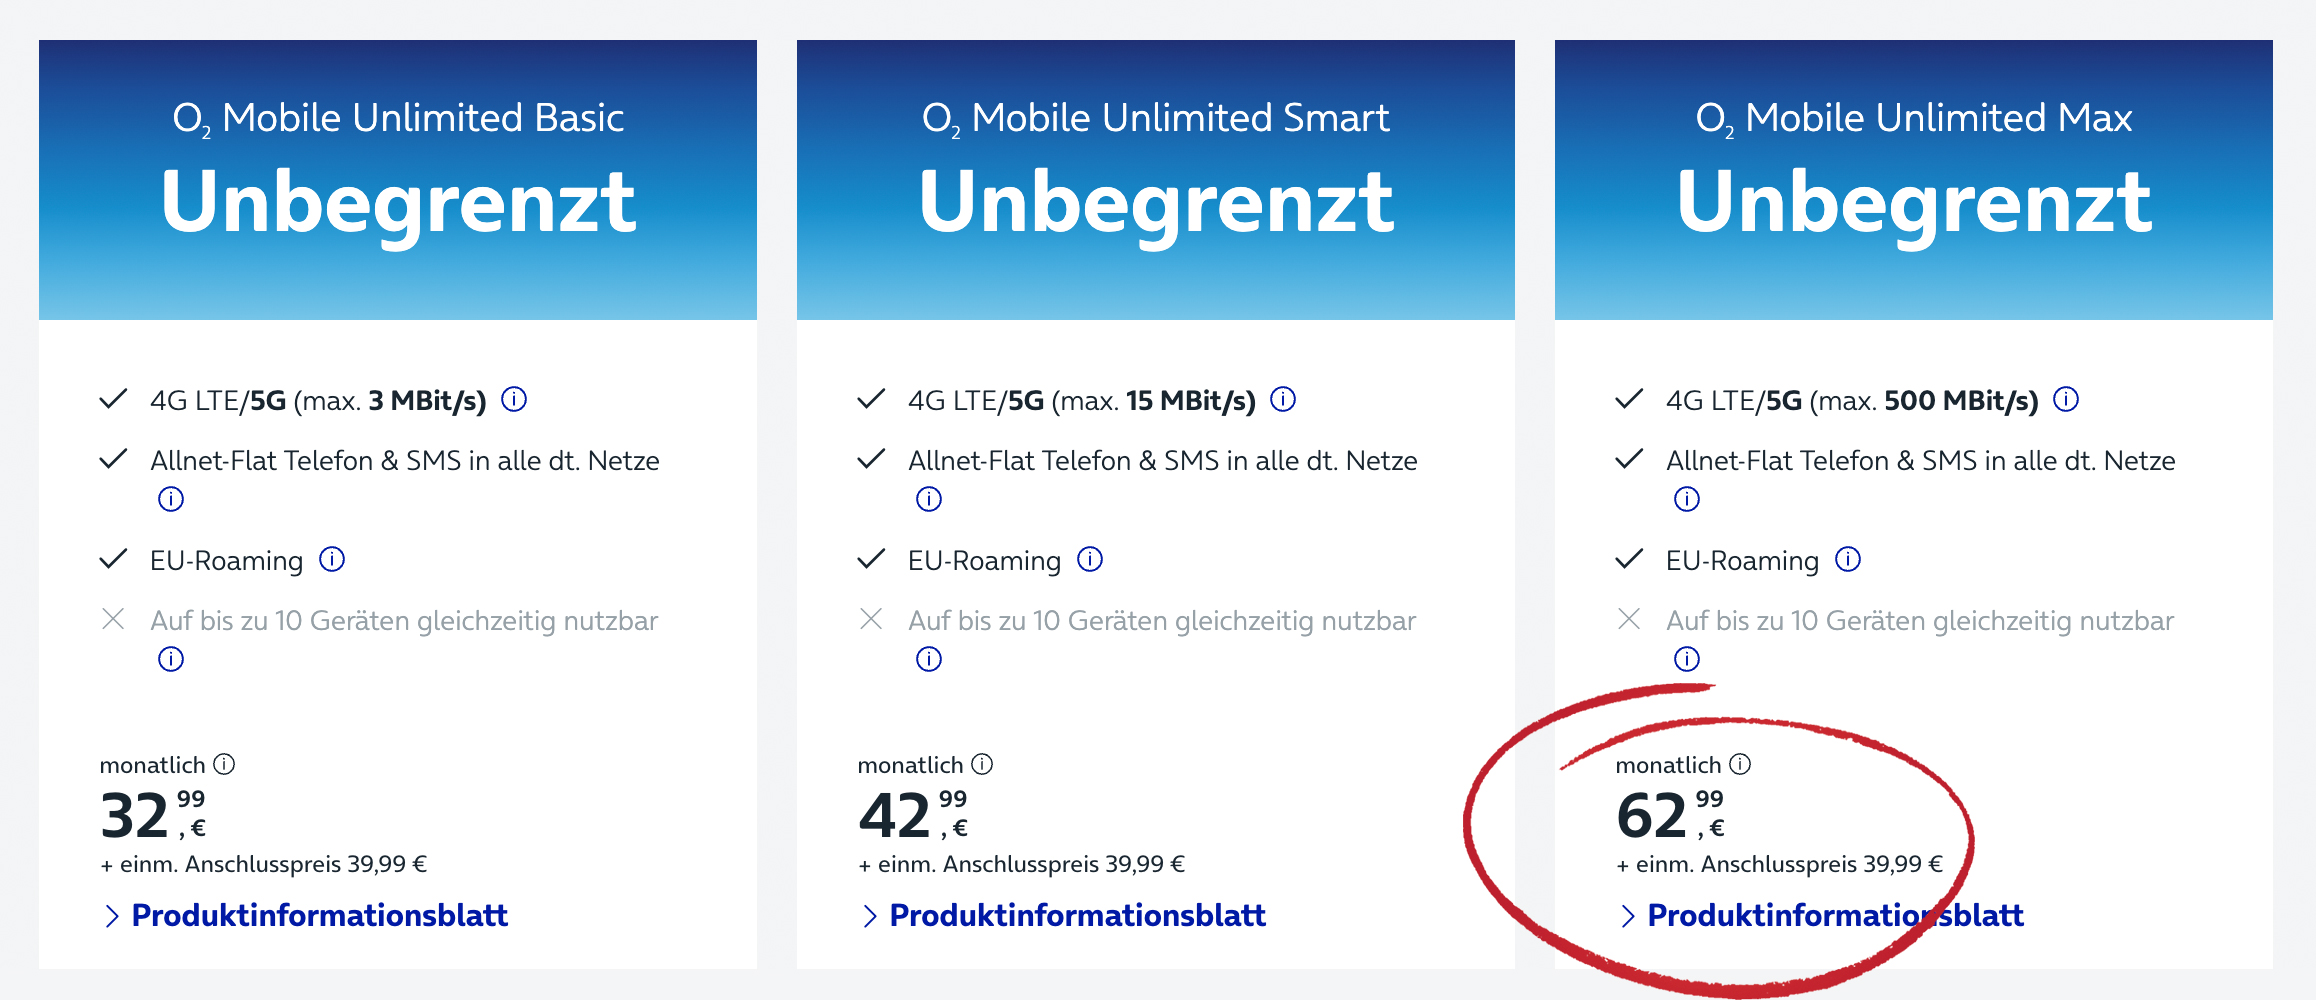 O2 Mobile Unlimited: 59%-Preiserhöhung für die echte Datenflat ›